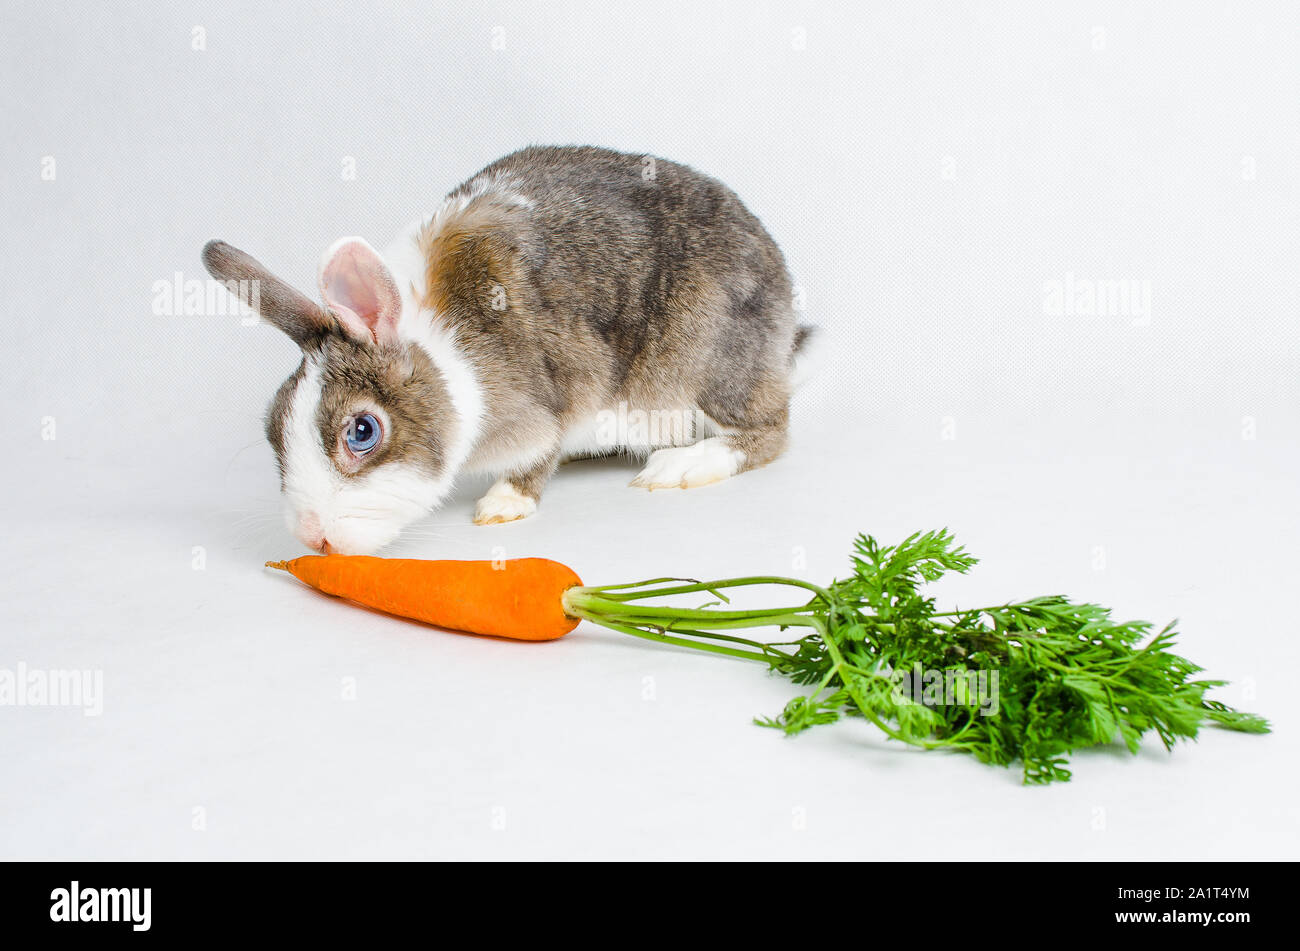 Zwerg Kaninchen essen orange Karotte auf hellen Hintergrund Stockfoto